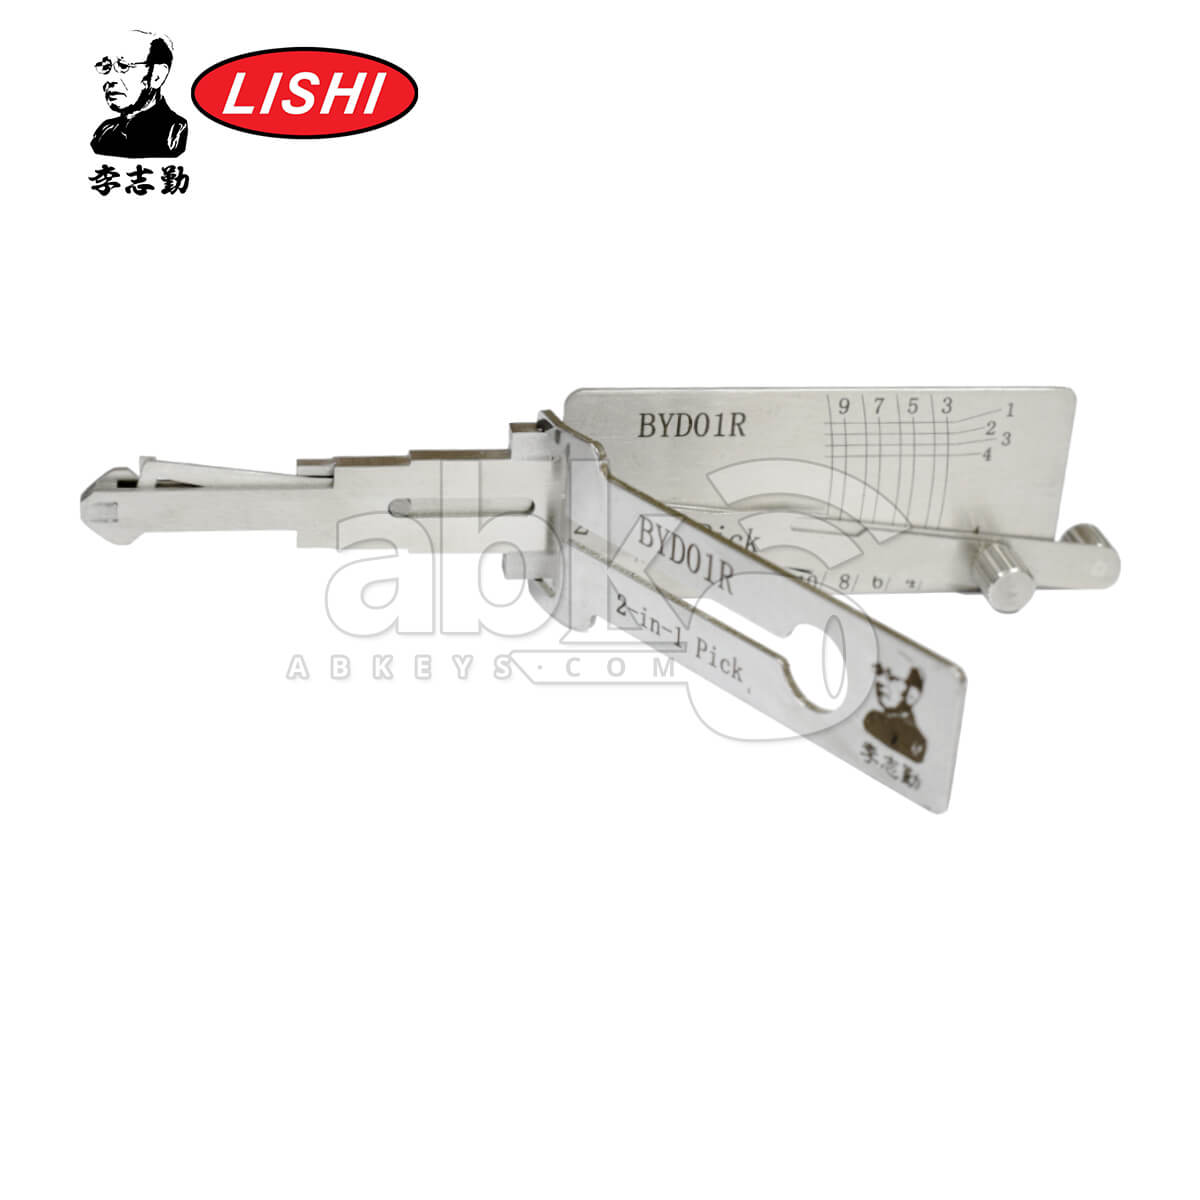 Original Lishi BYD01R 2-in-1 Pick & Decoder for BYD Lishi Tool - ABK-1003 - ABKEYS.COM